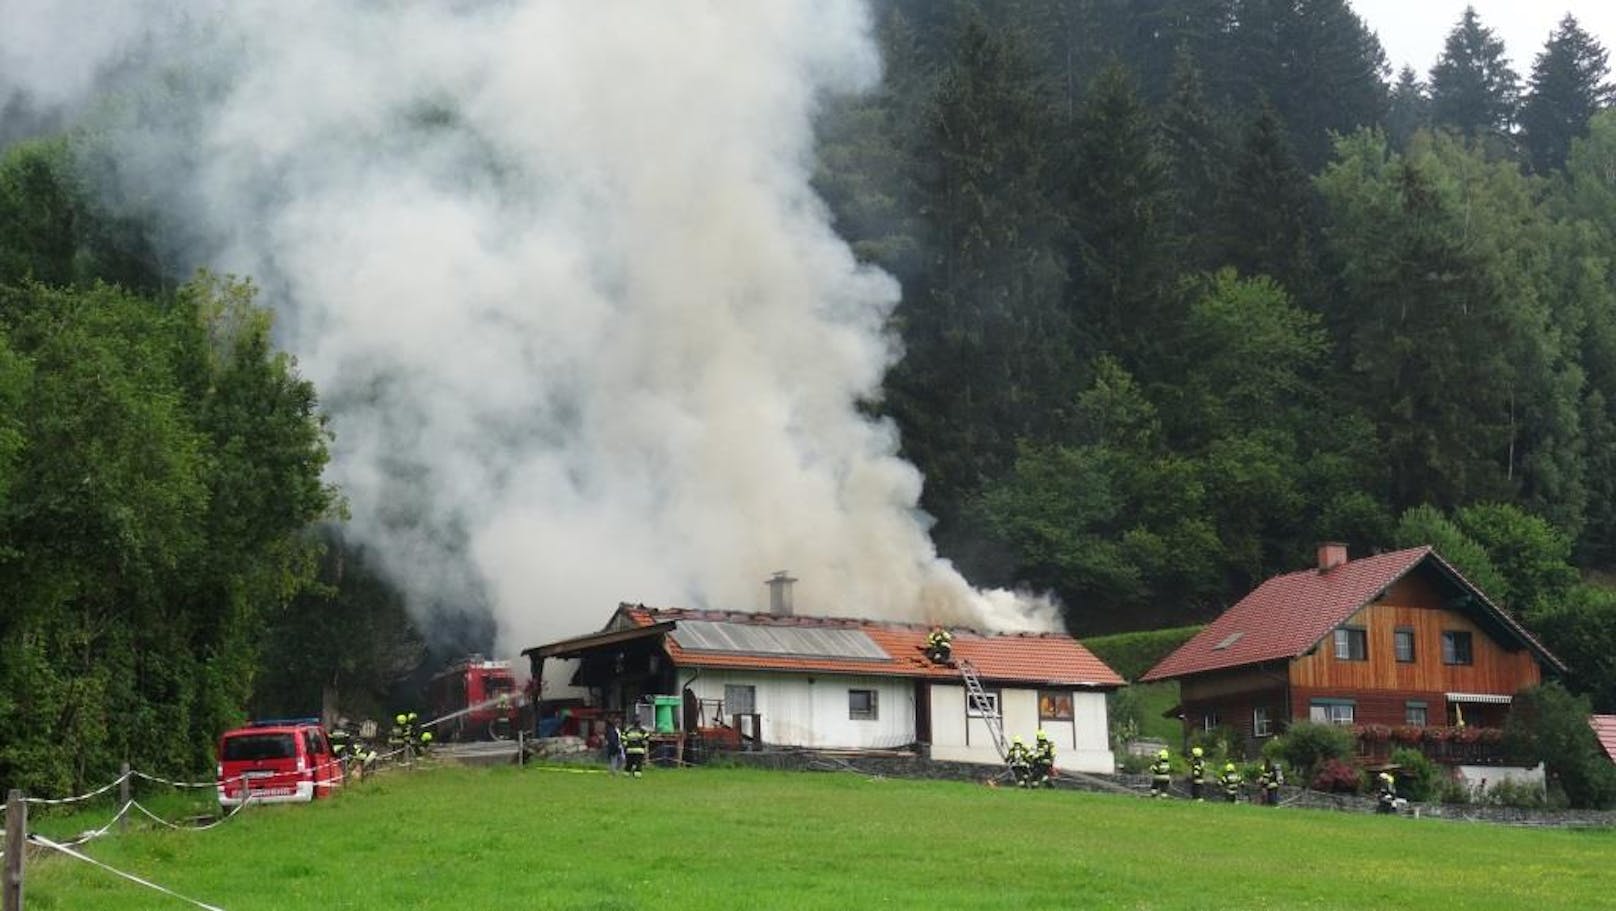 Benzindämpfe entzündeten sich - Gebäude in Flammen